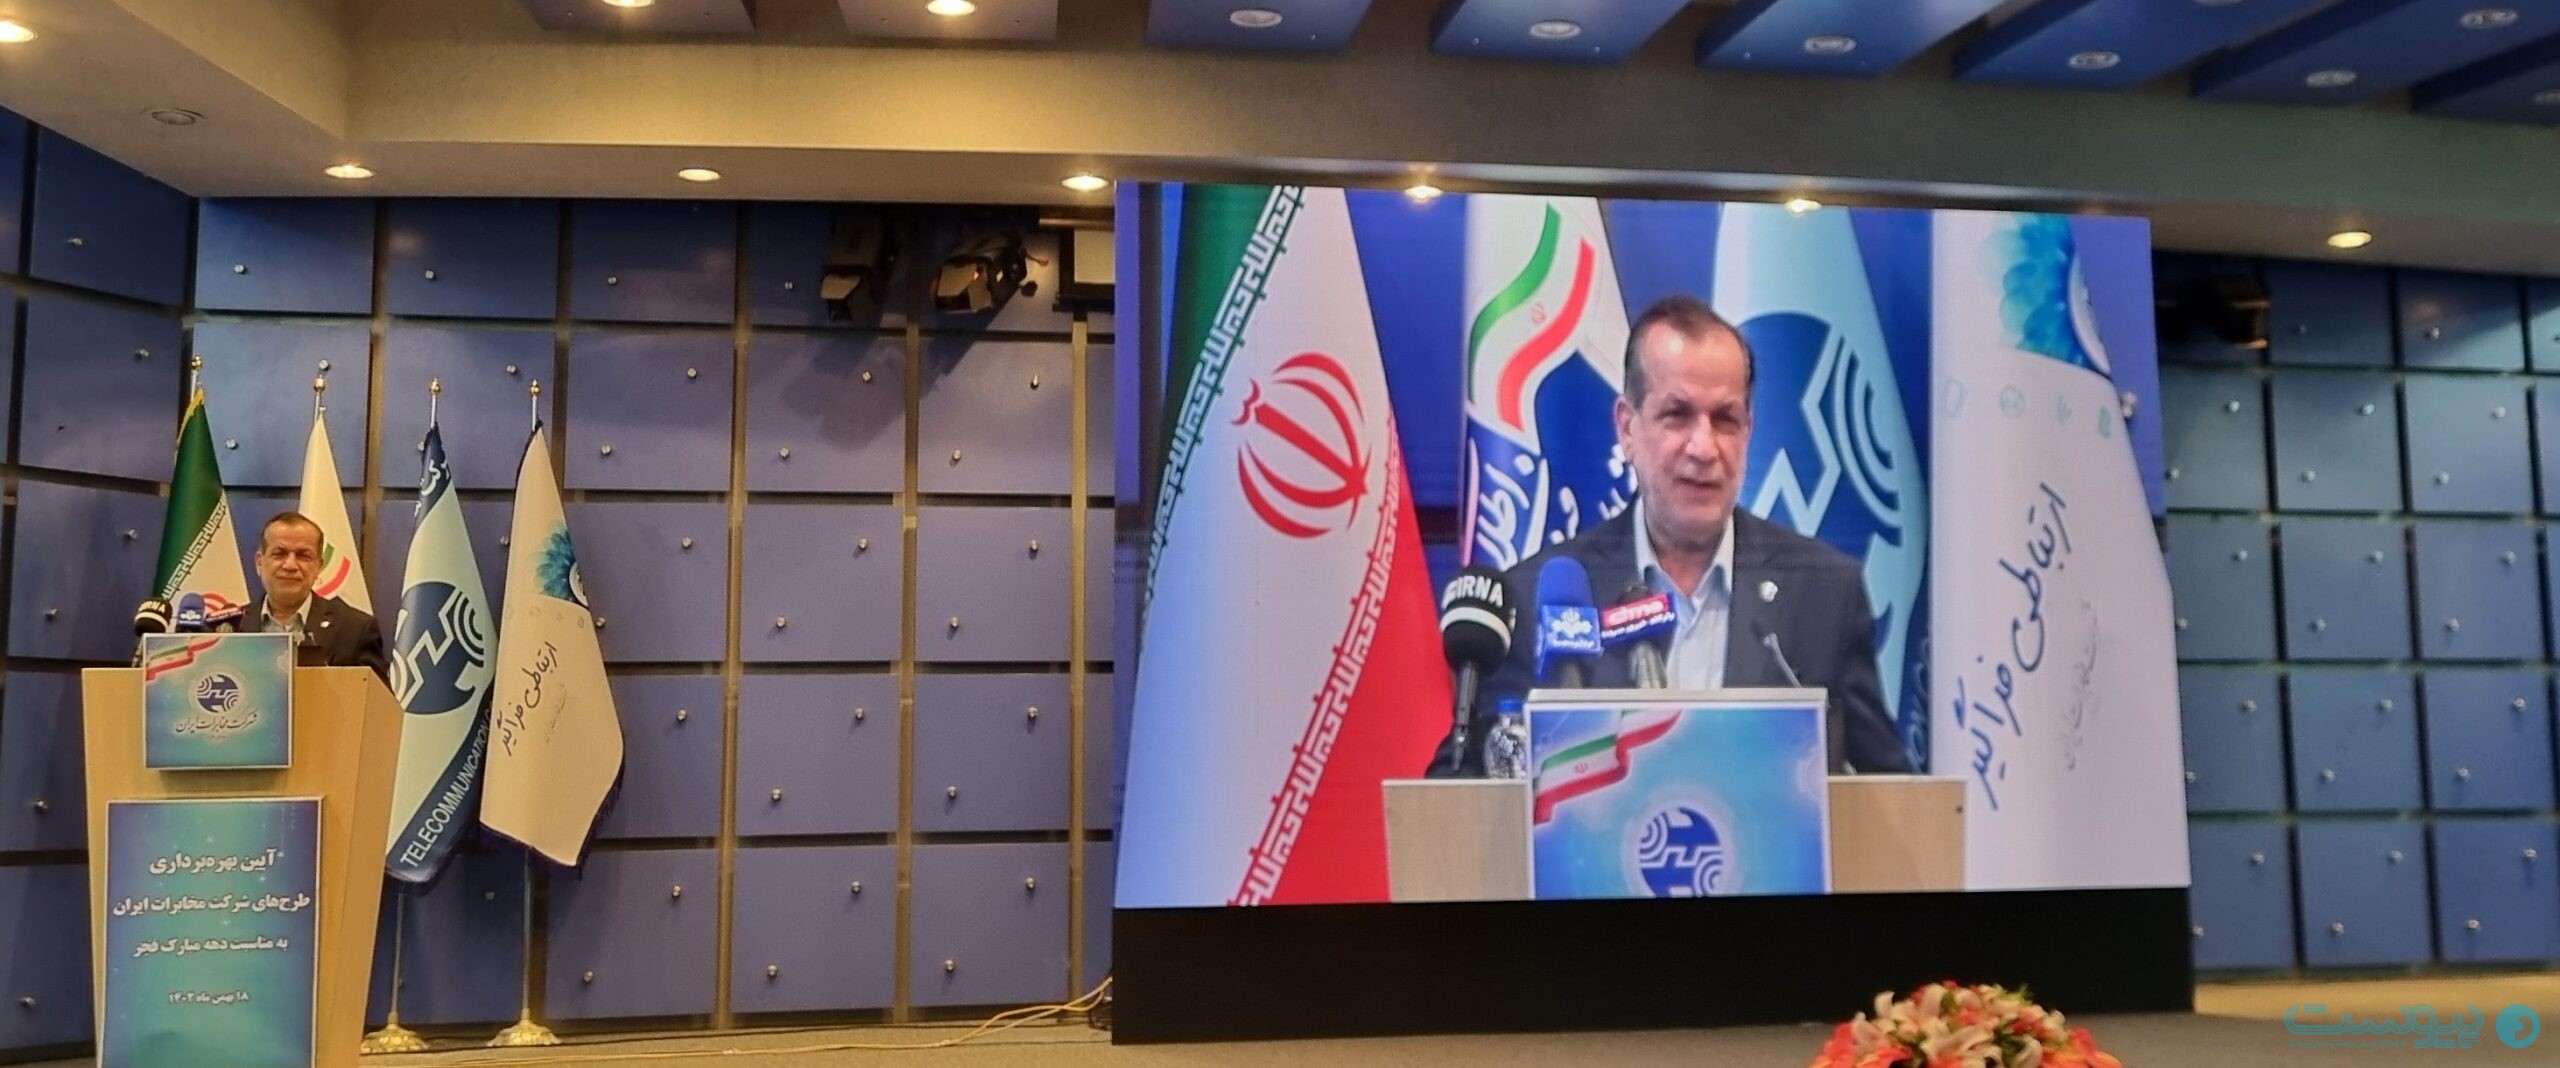 ابراهیم محمودزاده، رئیس هیات مدیره شرکت مخابرات ایران